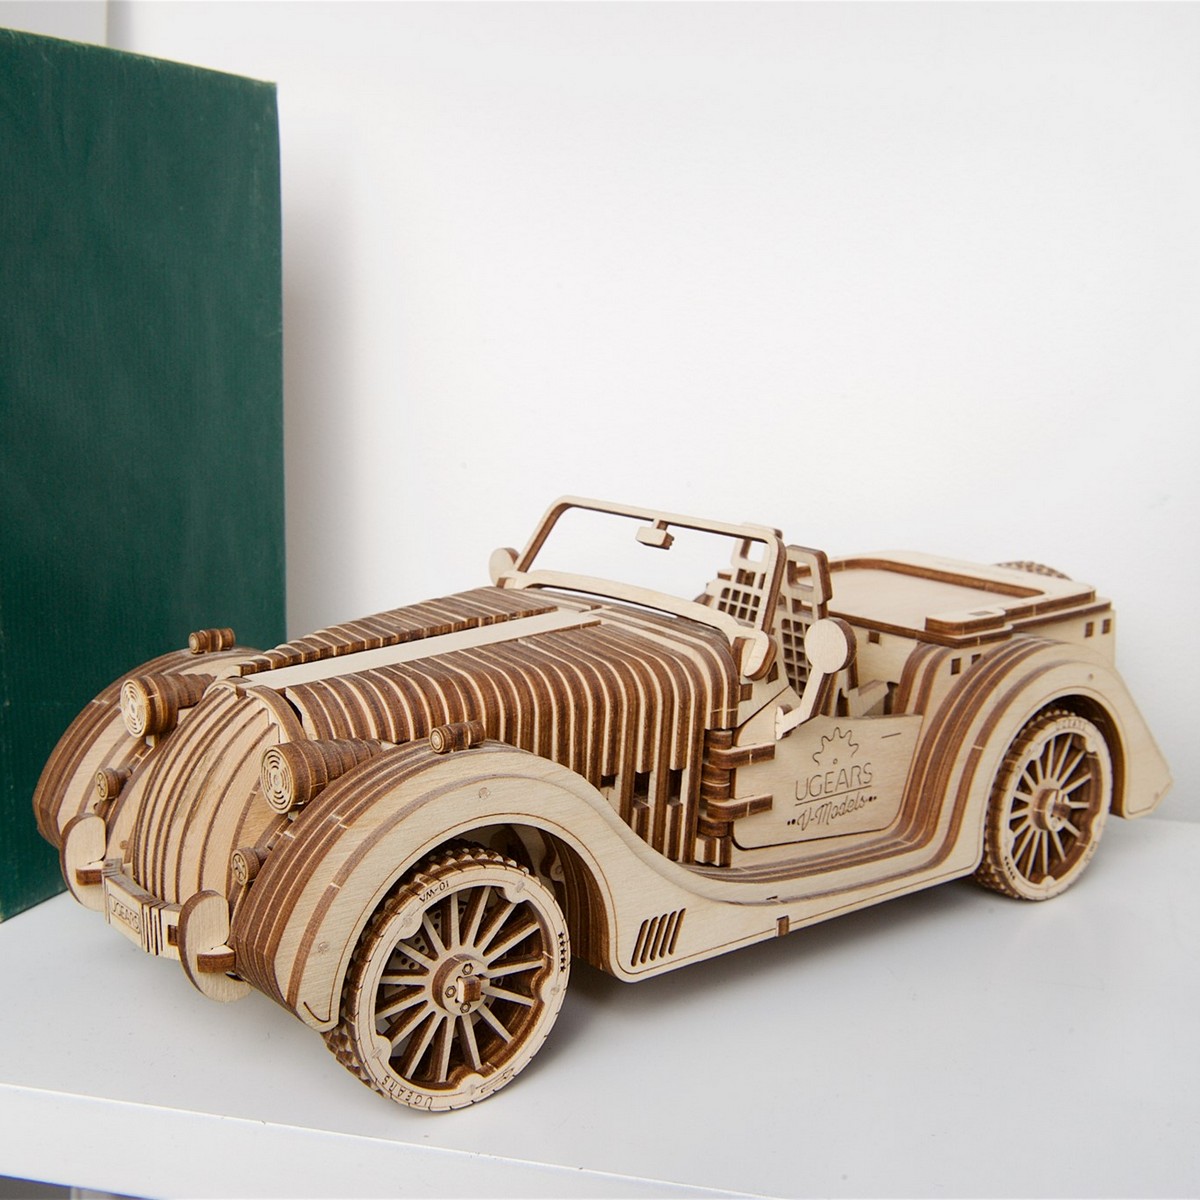 UGEARS maquette en bois pour adulte voiture roadster. une idee cadeau chez ugo et lea   (8)